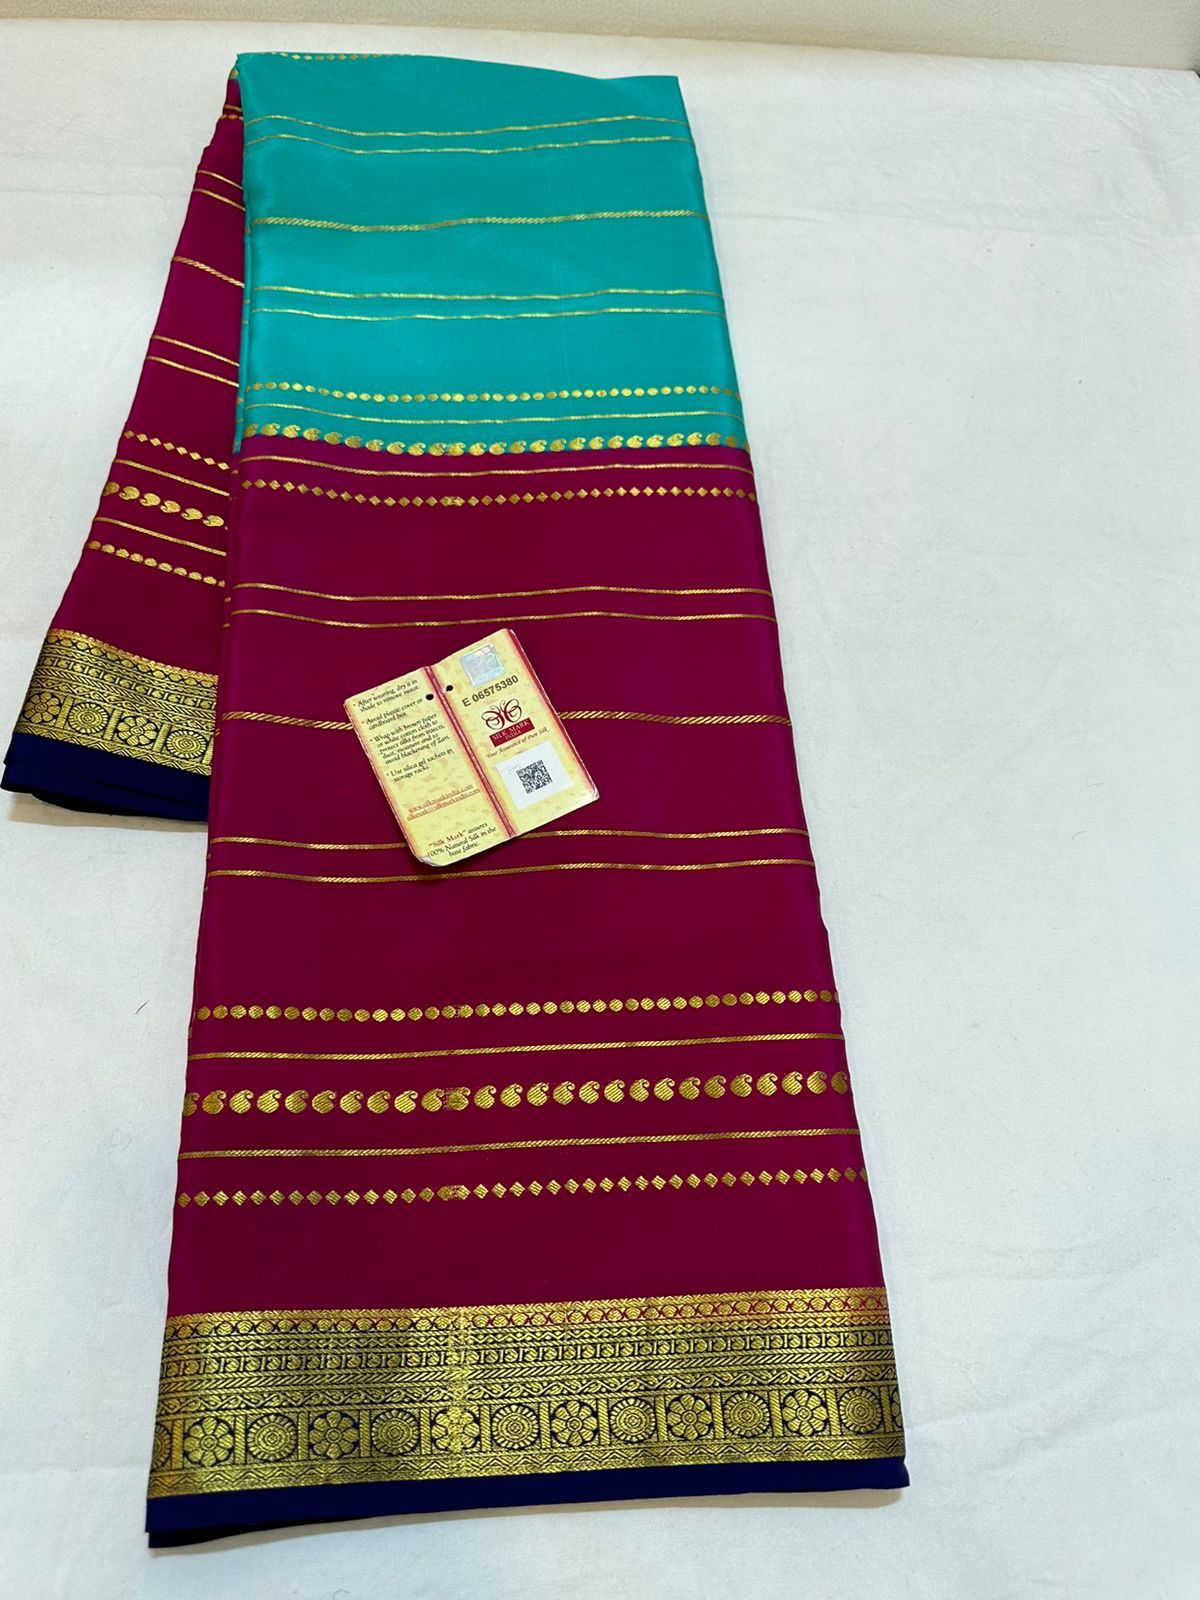 Pure mysore silk  100 gram thickness saree